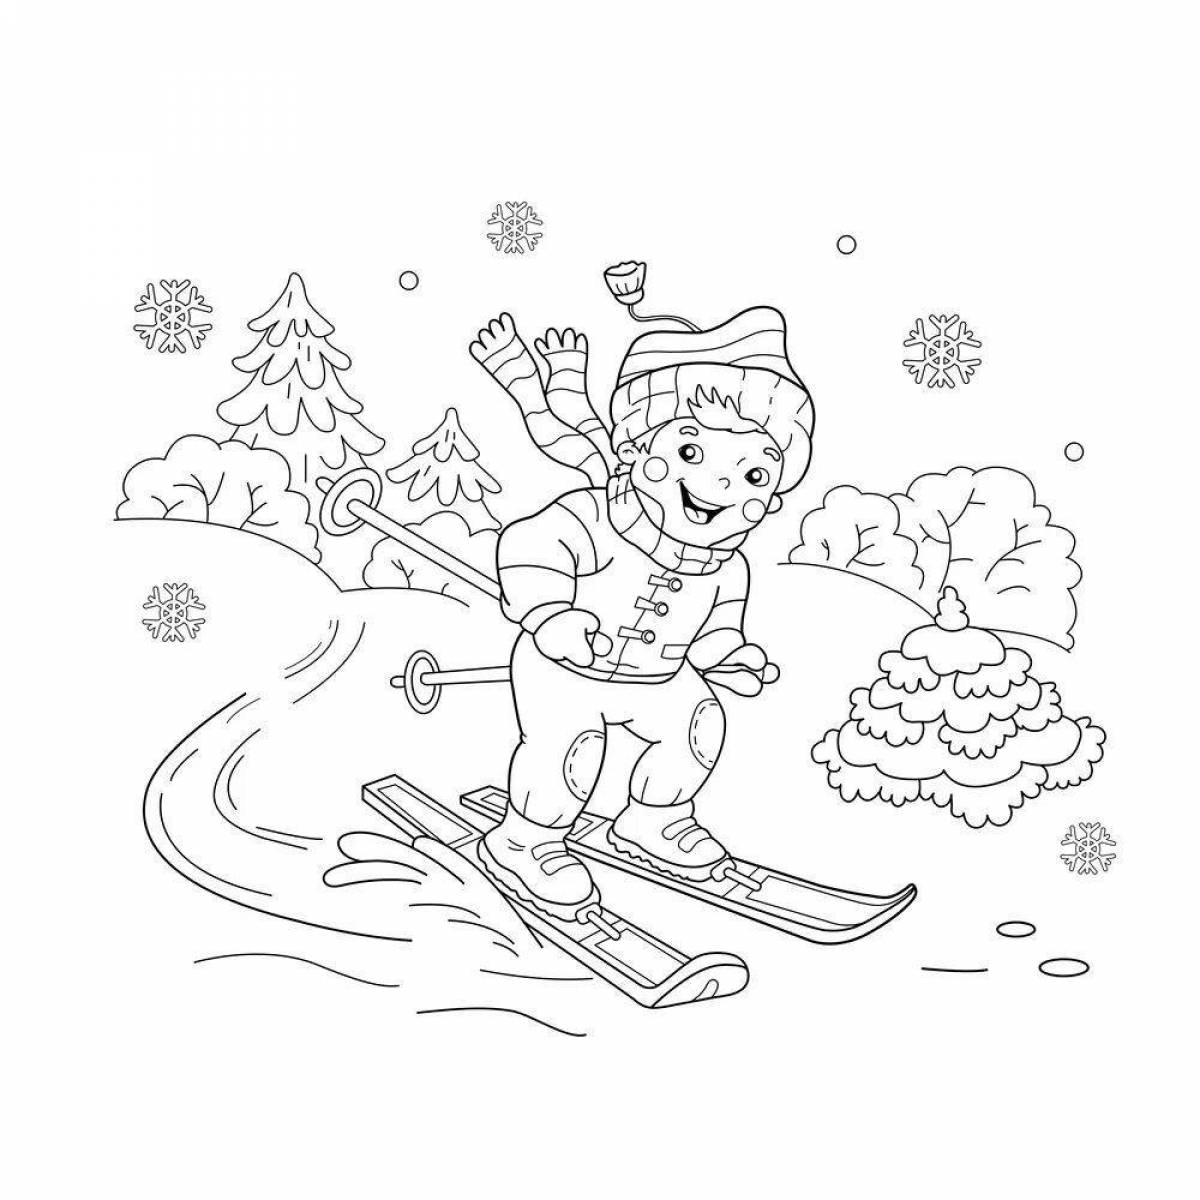 Фантастическая раскраска для катания на лыжах